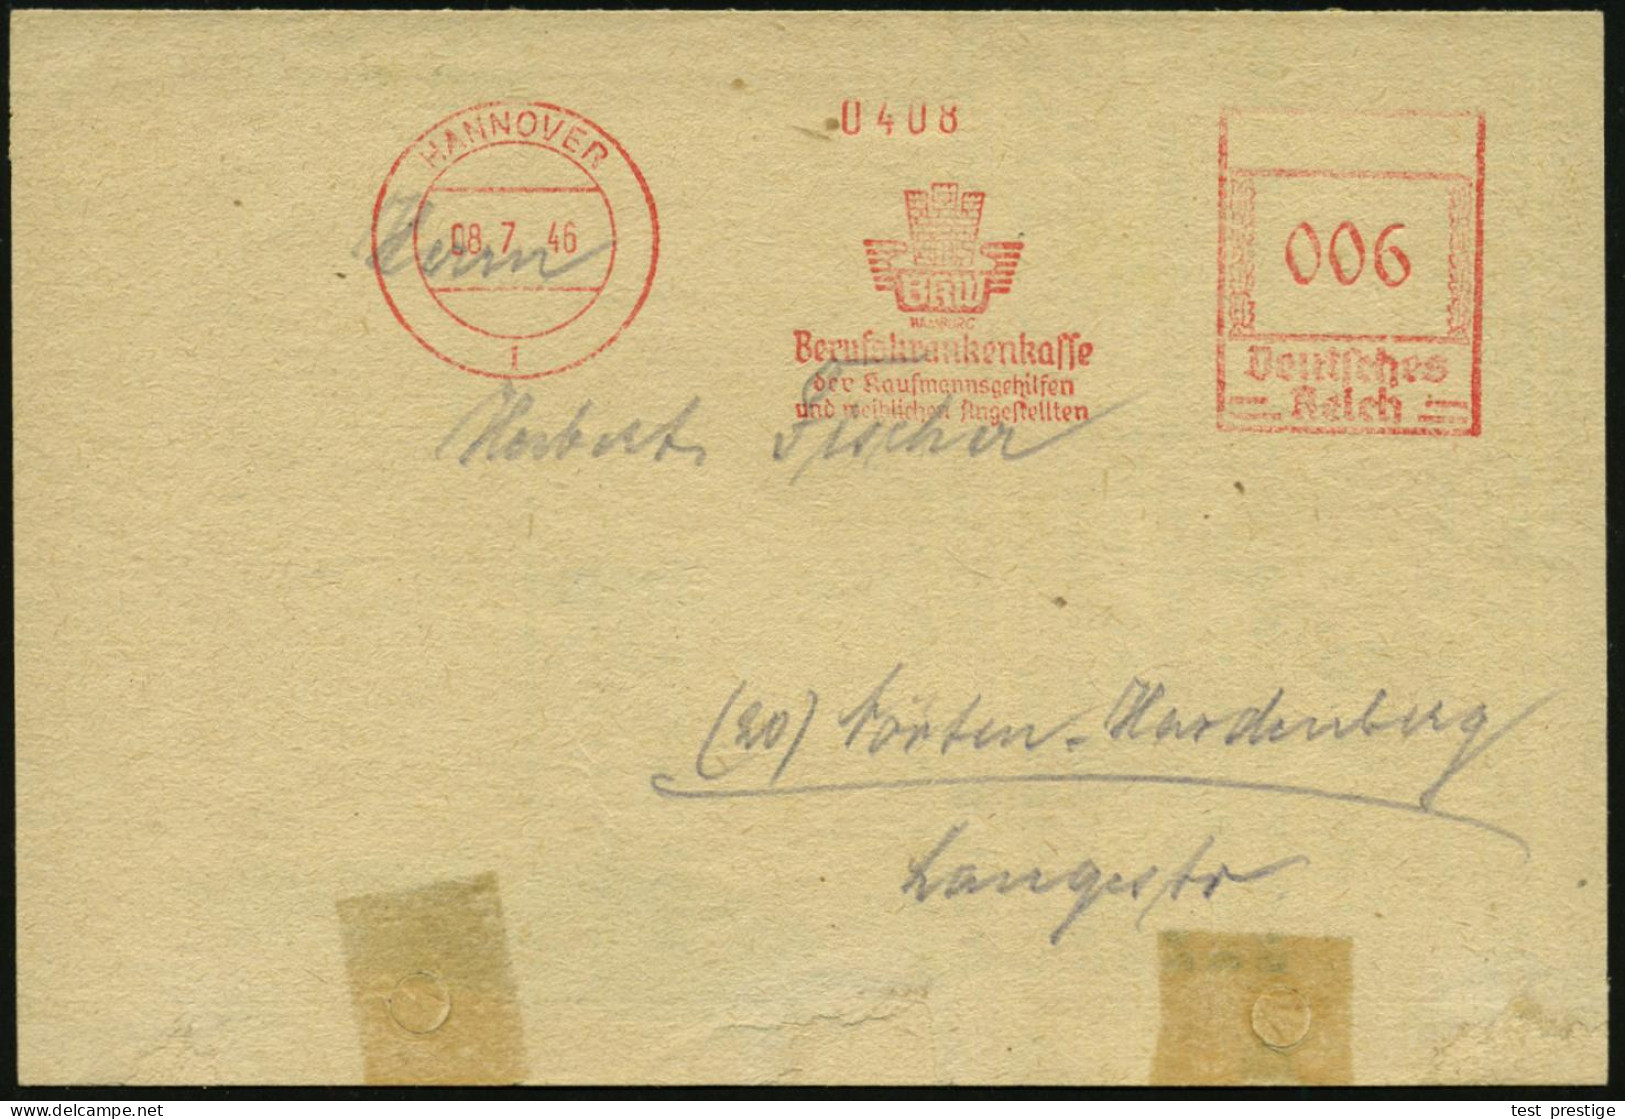 HANNOVER/ BKW/ HAMBURG/ Berufskrankenkasse/ Der Kaufmannsgehilfen/ U.weiblichen Angestellten 1946 (8.7.) Seltener, Aptie - Sonstige